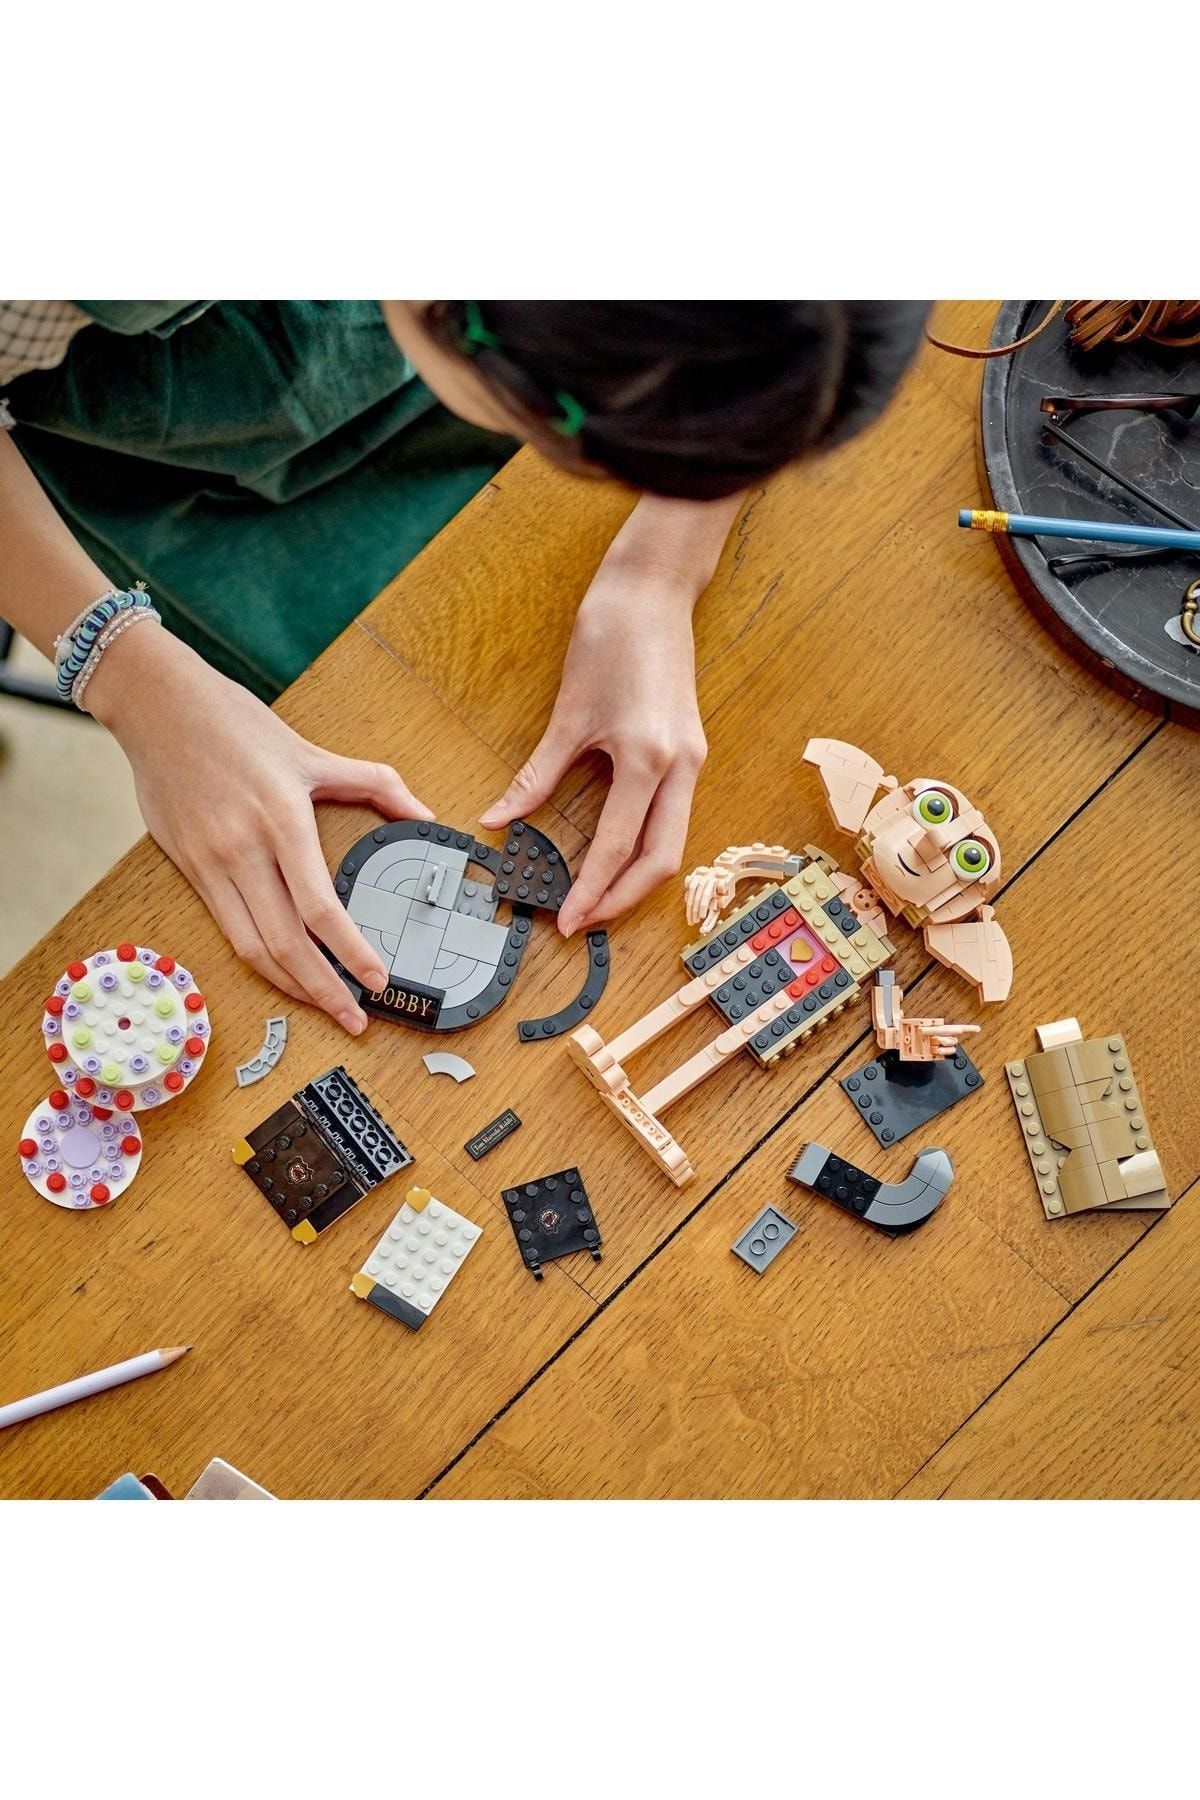 LEGO مدل خانه دابی هری پاتر ™ 76421 اسباب بازی ساخت و ساز